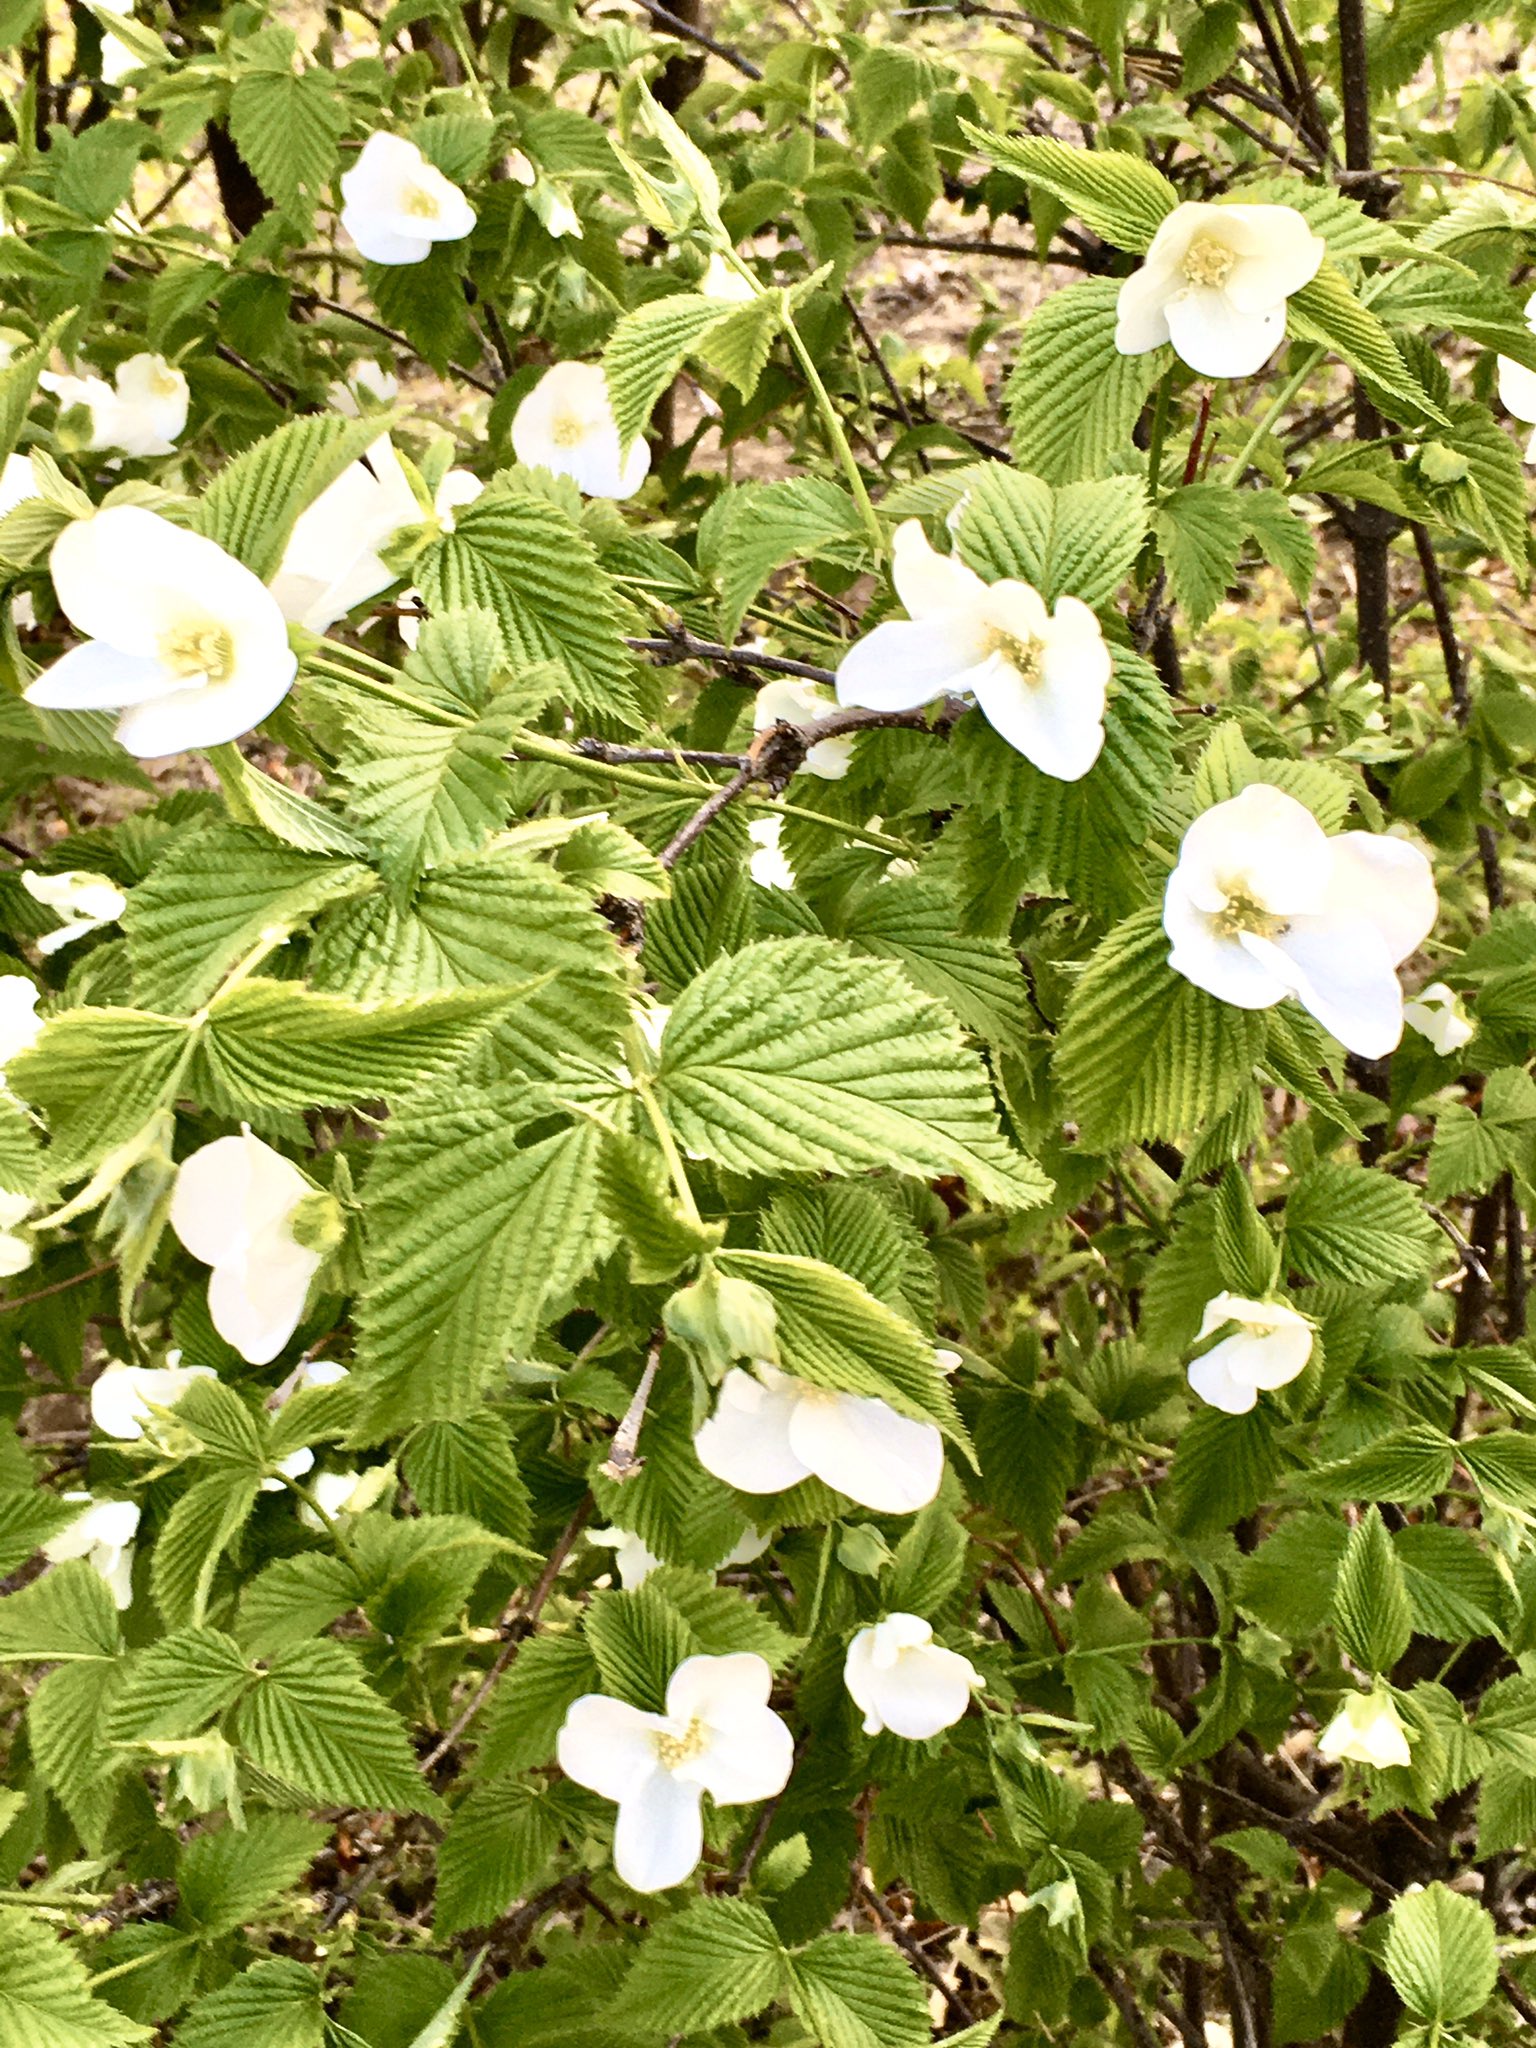 まこ Sur Twitter おはようございます 白花のヤマブキが咲き出しました 毎年咲き終わると黒い種 が出来るのですが自然に発芽したモノが増えて 庭のあちこちで咲いてます 緑の葉に清楚な白い花が映えて綺麗なんです 今日も無理せず良き1日を 世界に一つだけの